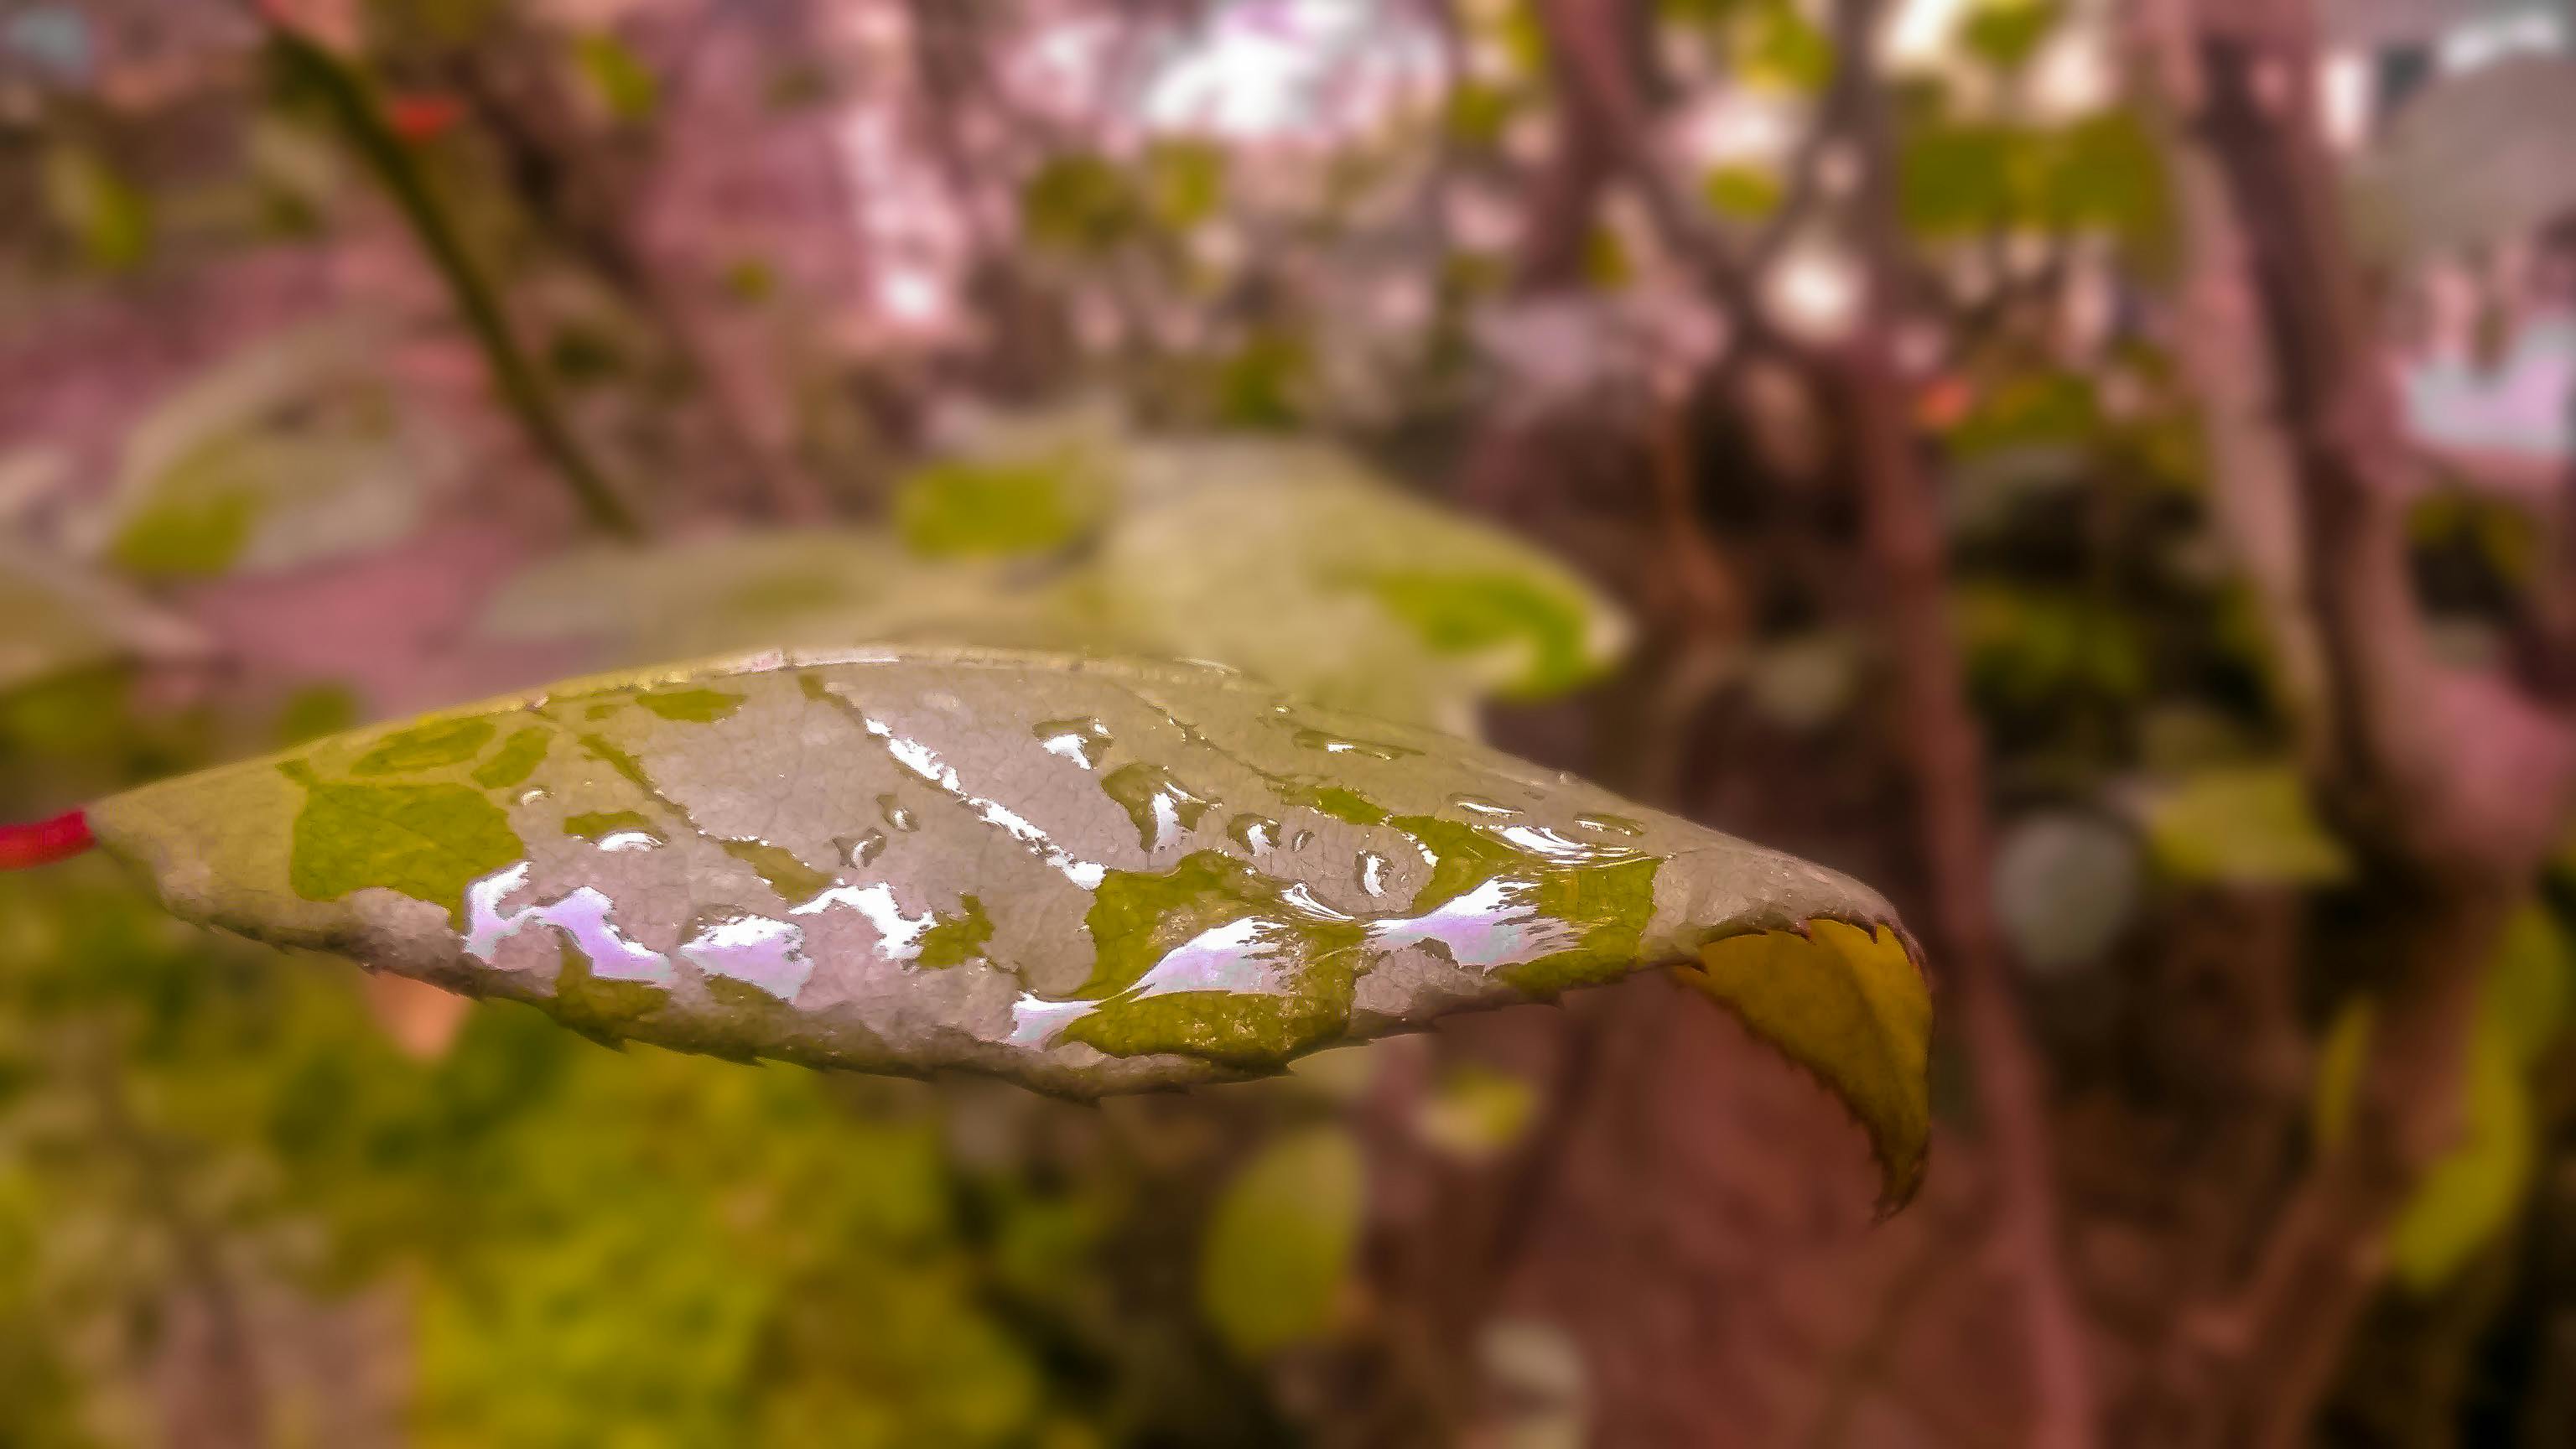 Free stock photo of autumn leaf, rain drops, rose leaf